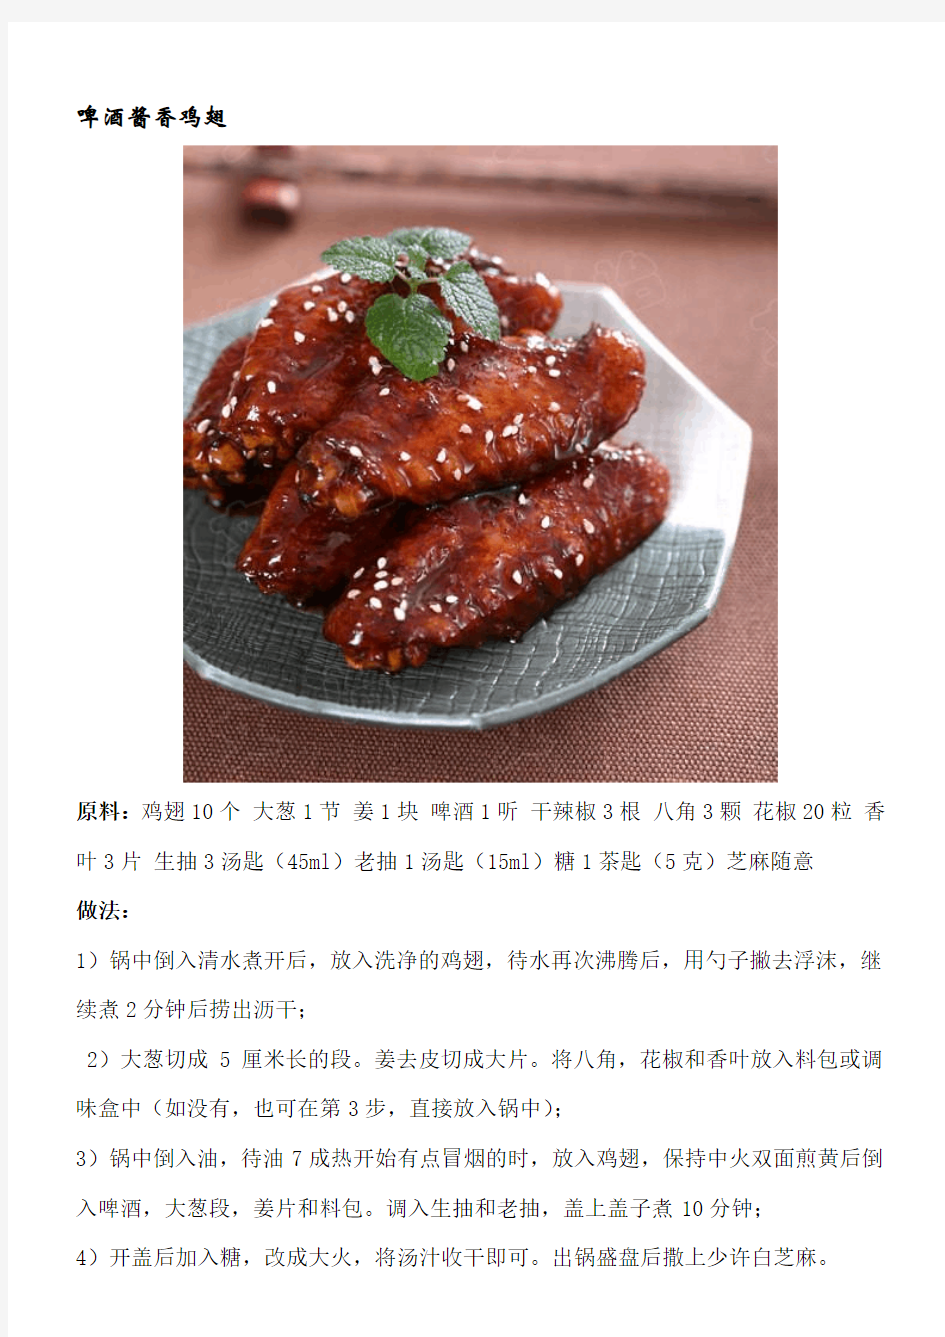 21道家常菜菜谱(图文详解)-打印整理版-11.8.15-xpp